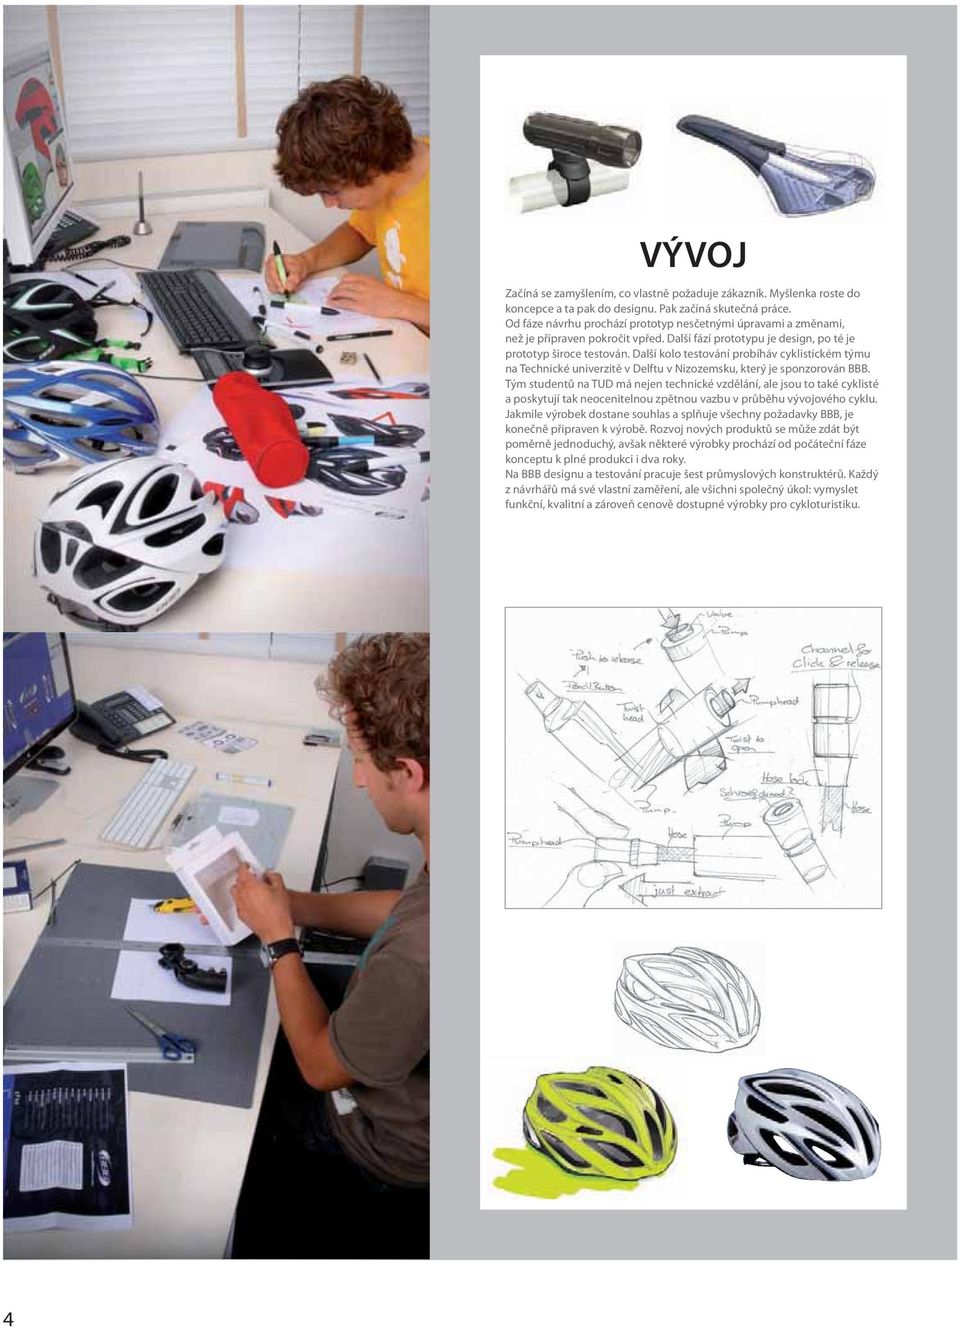 Další kolo testování probíháv cyklistickém týmu na Technické univerzitě v Delftu v Nizozemsku, který je sponzorován BBB.